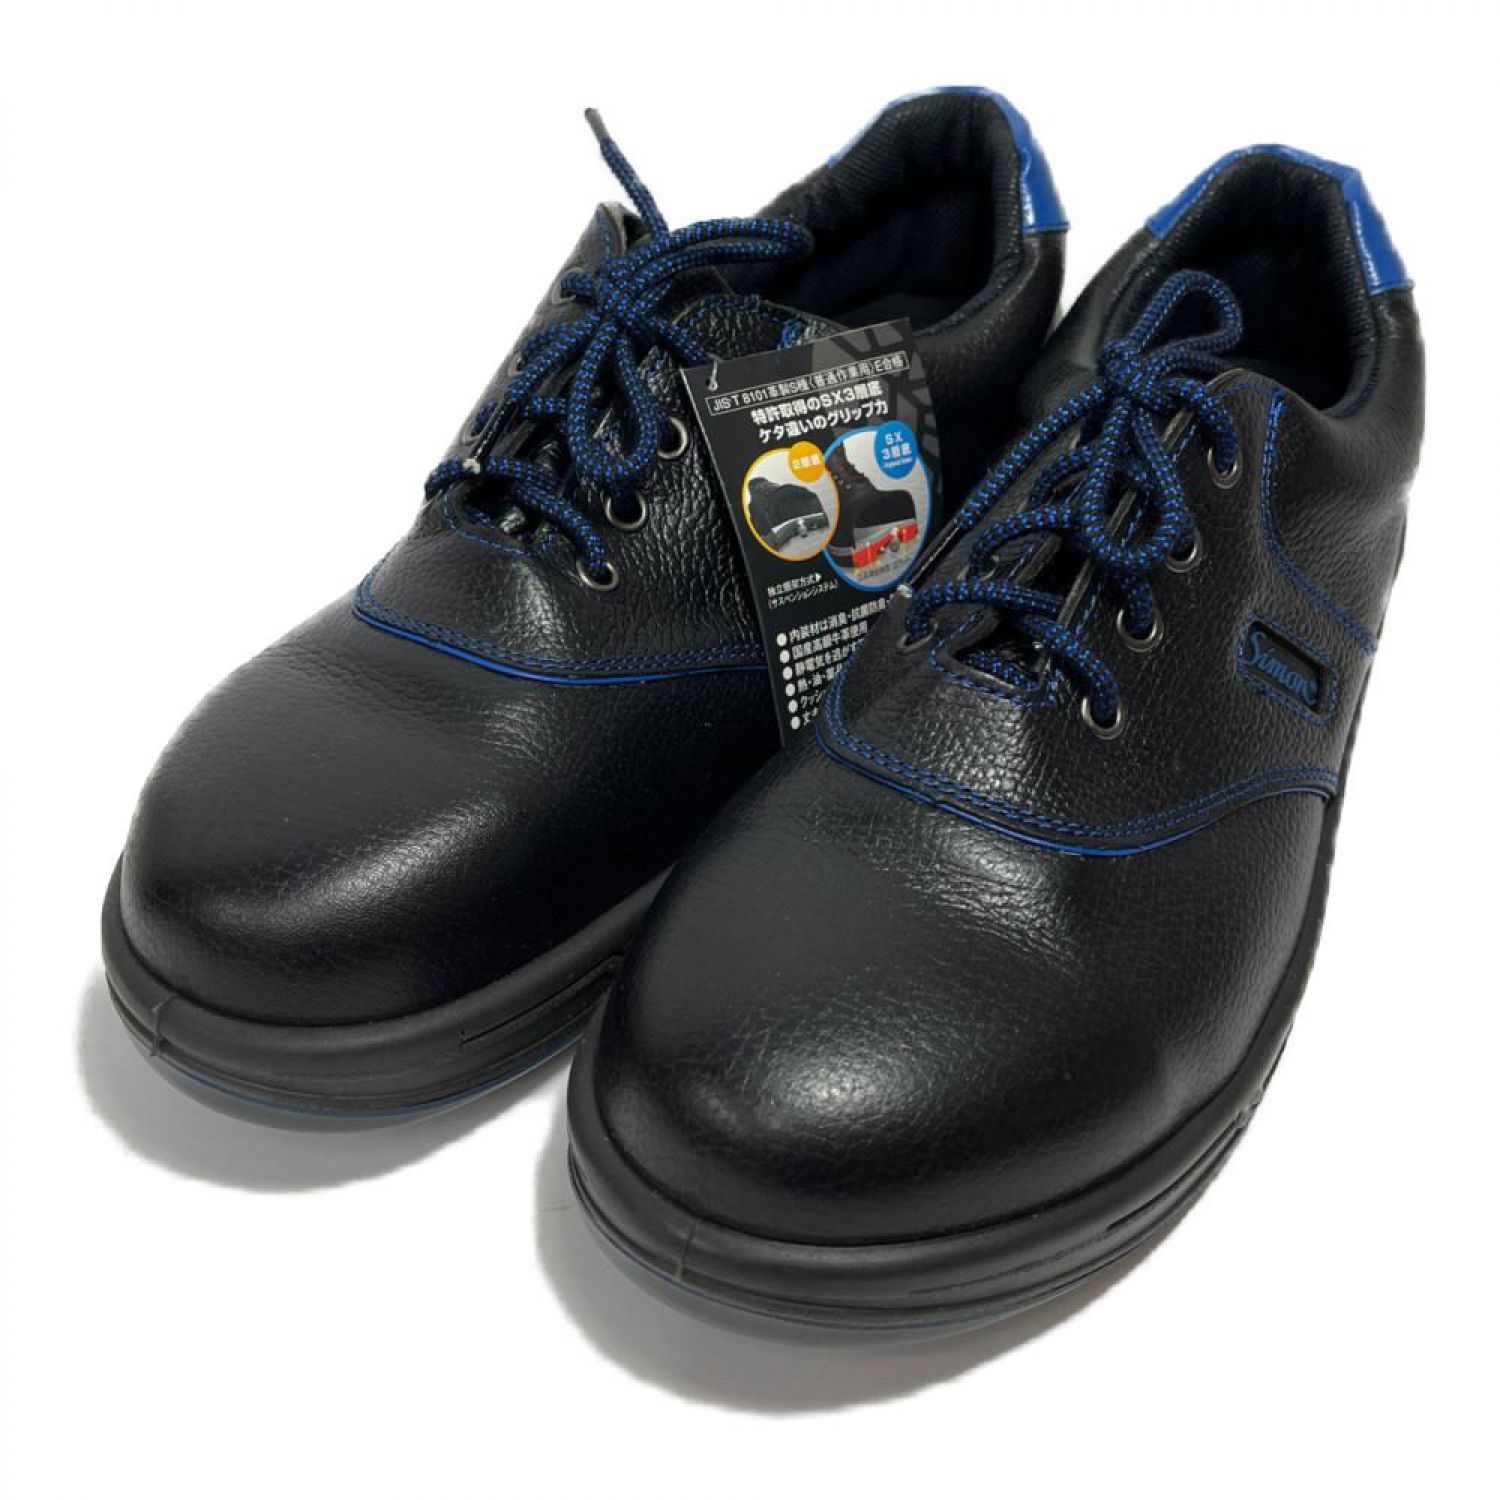 シモン 安全靴 短靴 SL11-BL黒/ブルー 28.0cm code:4007361-